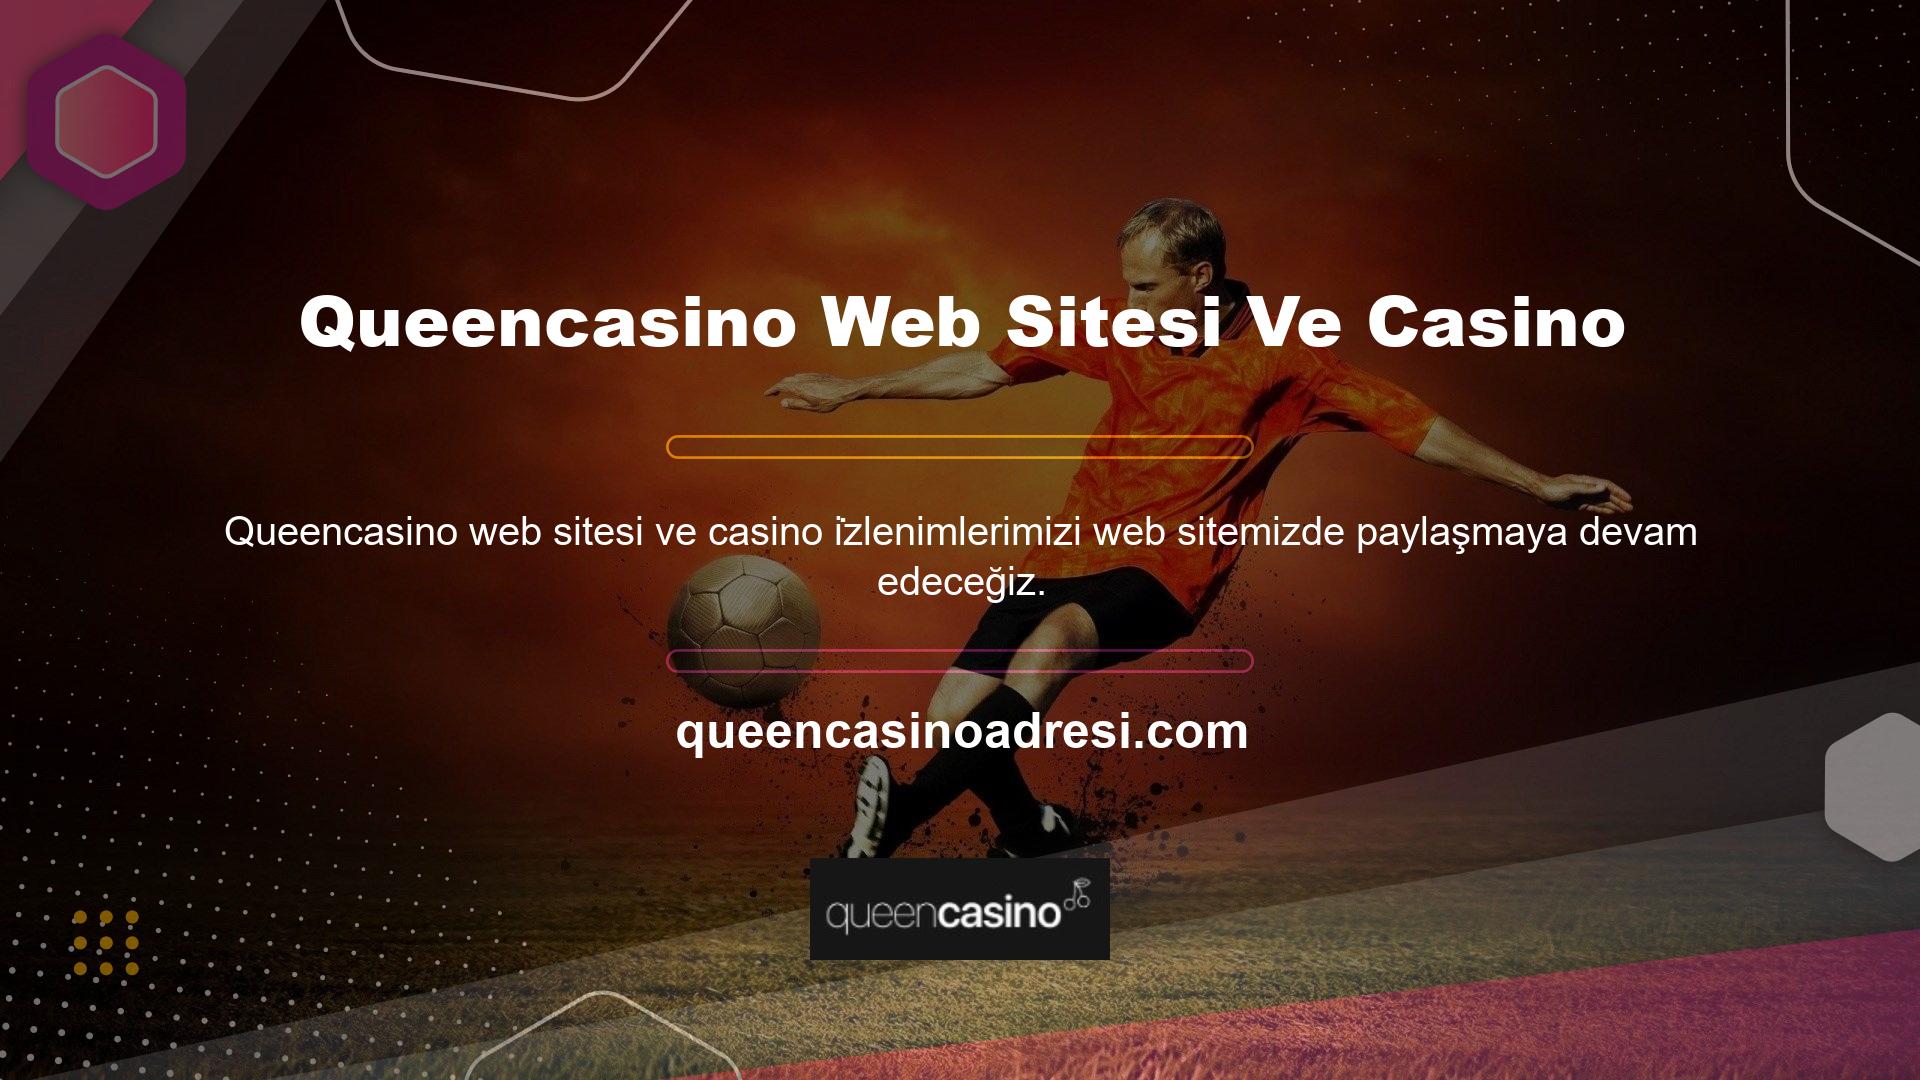 Lütfen bilgi panelinin iki bölüme ayrıldığını unutmayın: Queencasino web sitesi ve casino